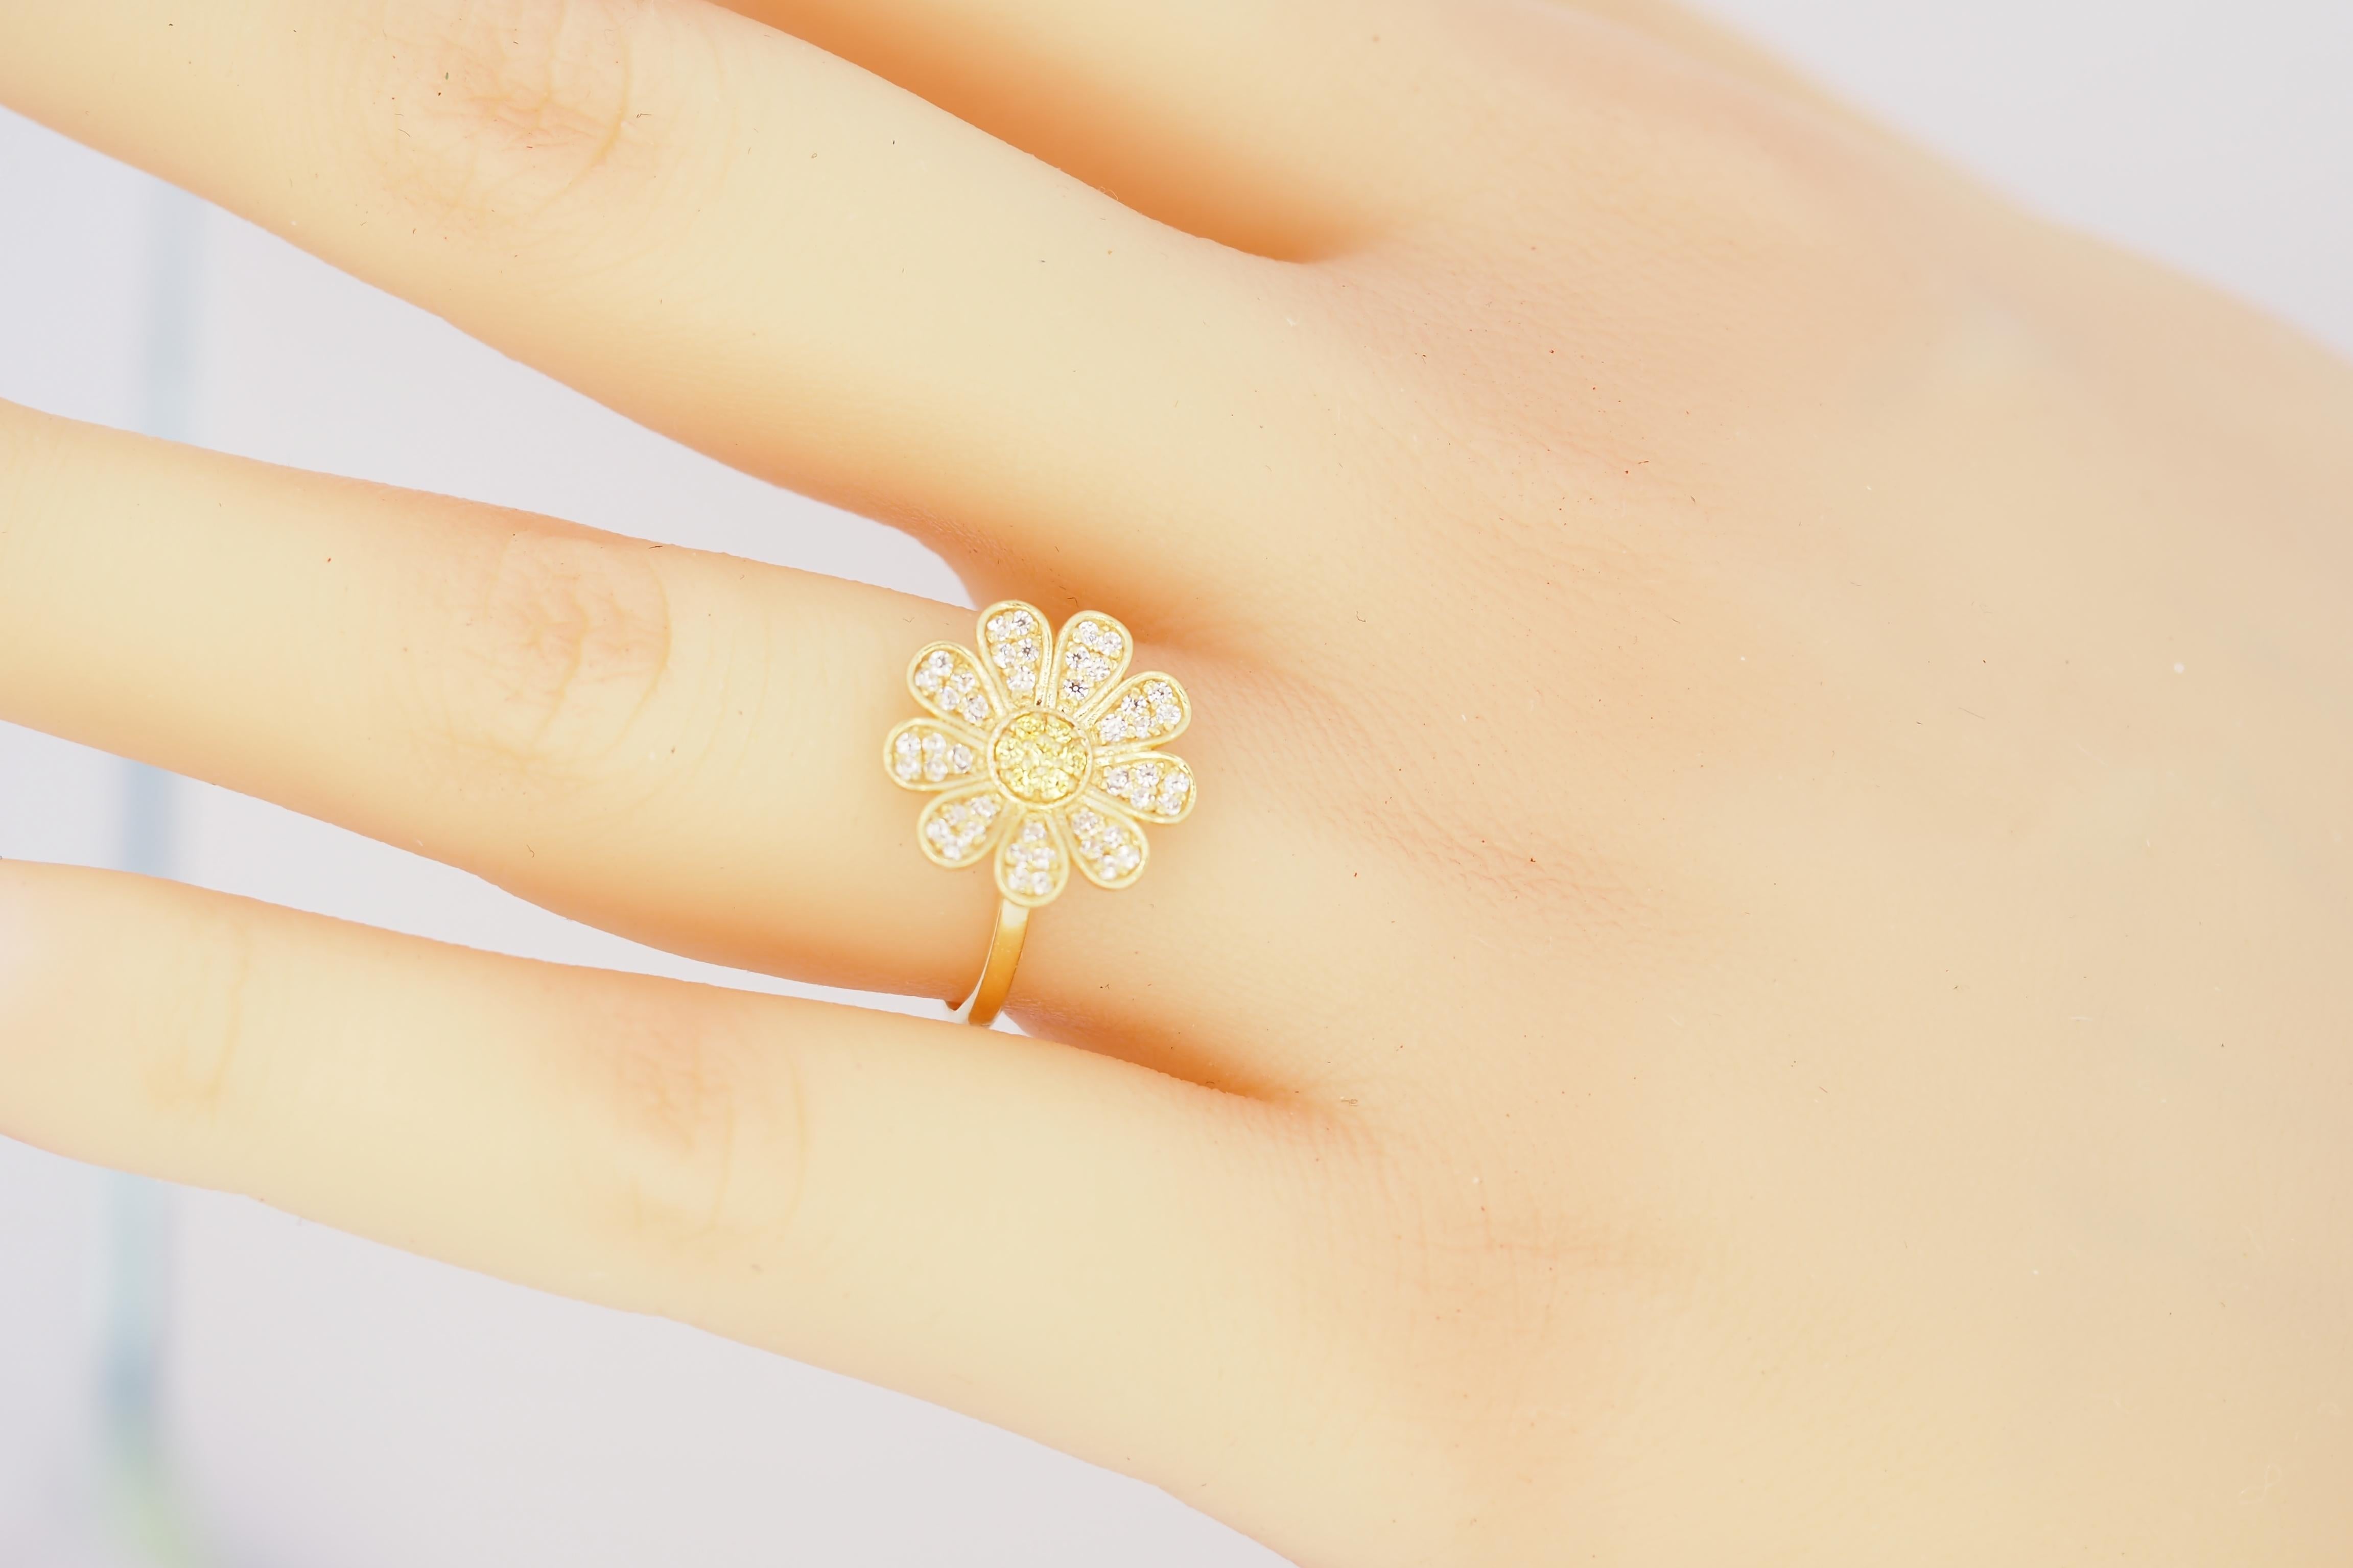 For Sale:  Daisy flower 14k gold ring.  12